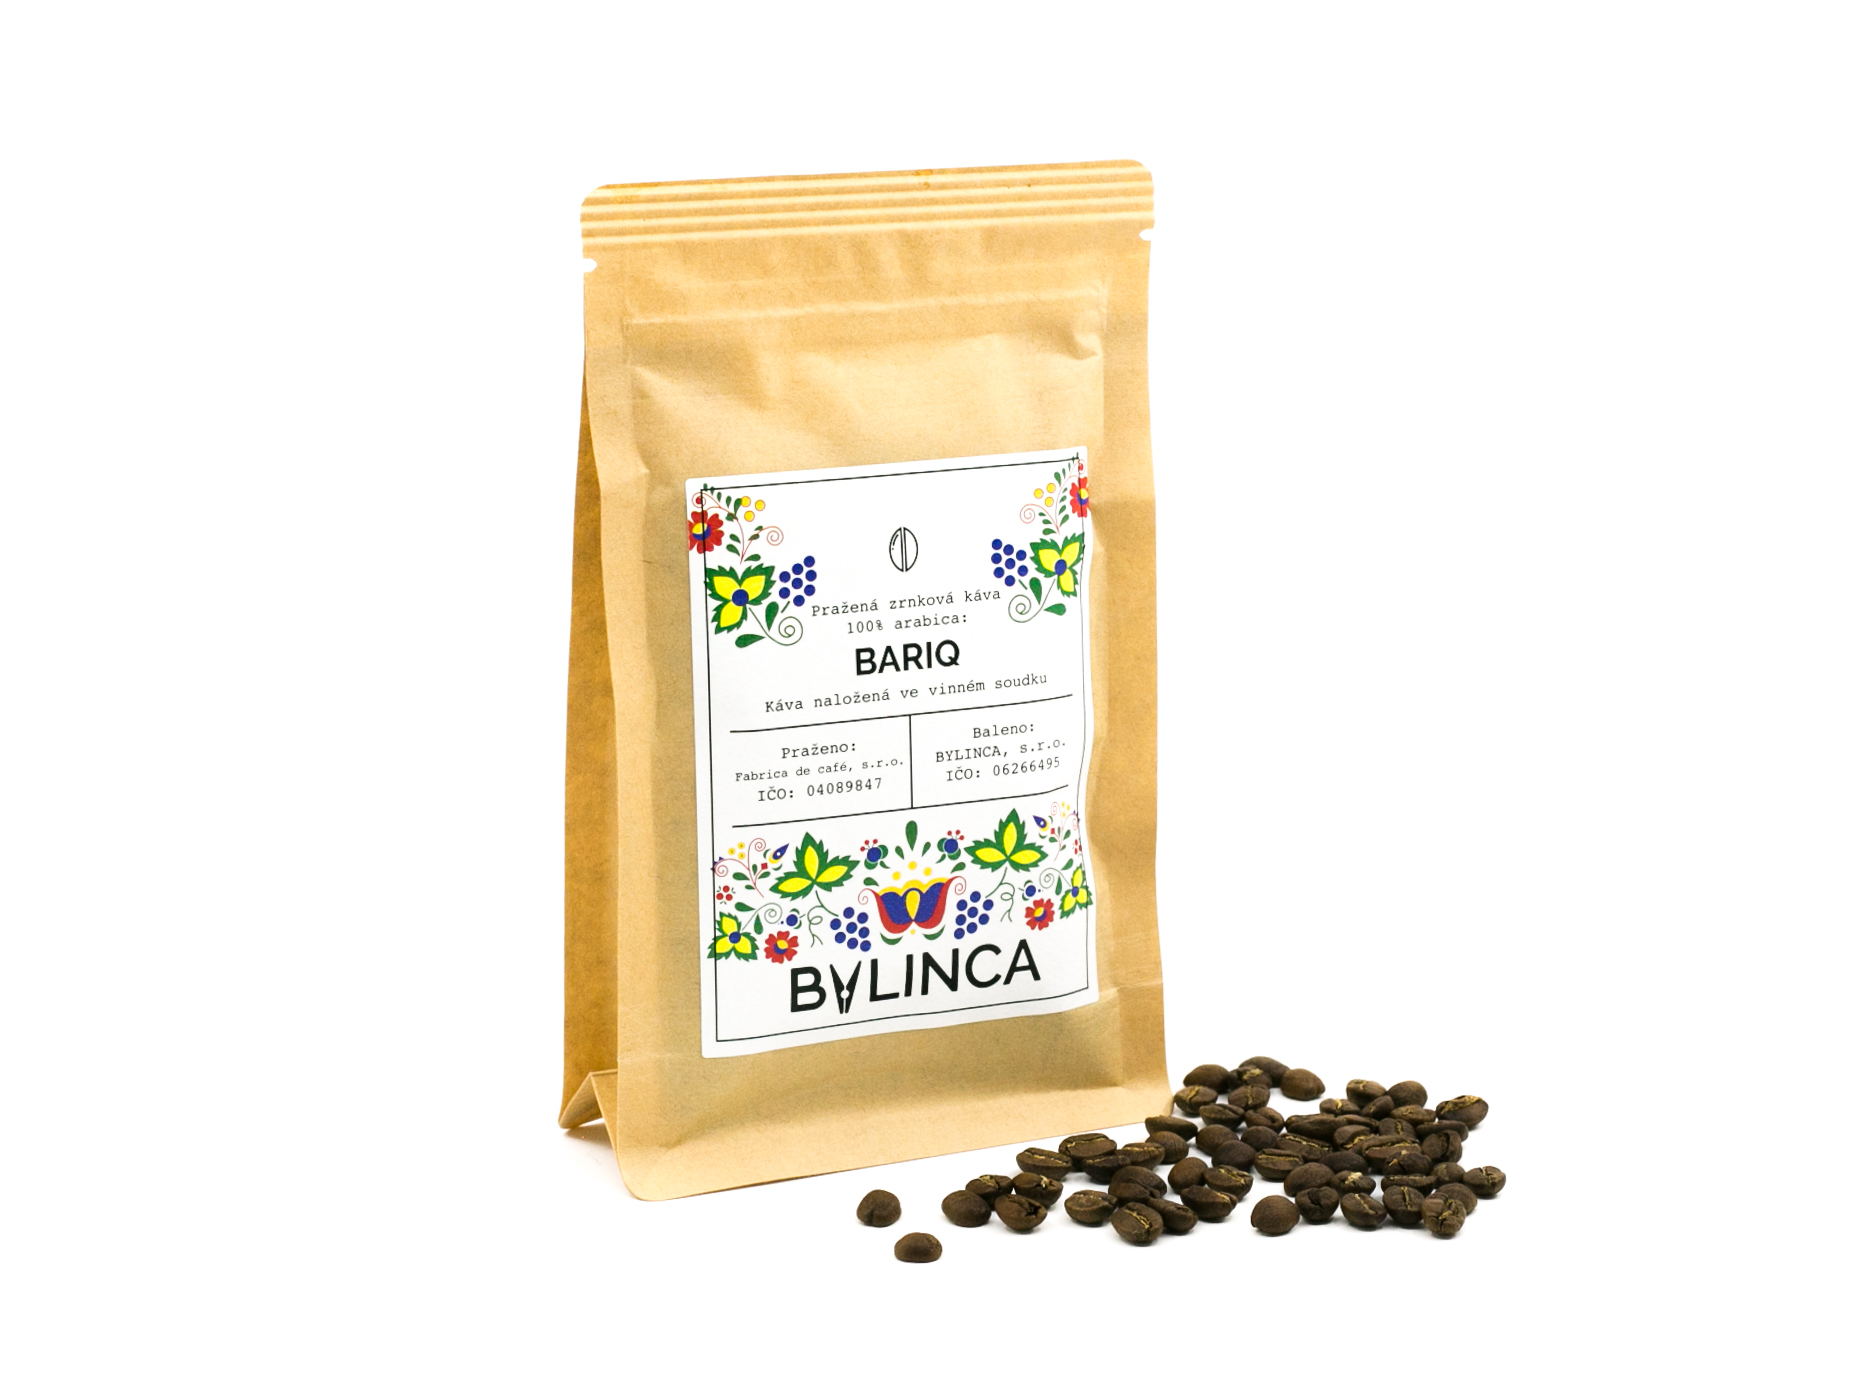 Zrnková káva: Bariq 100g, 250g, 500g, 1000g 1 ks: 100g